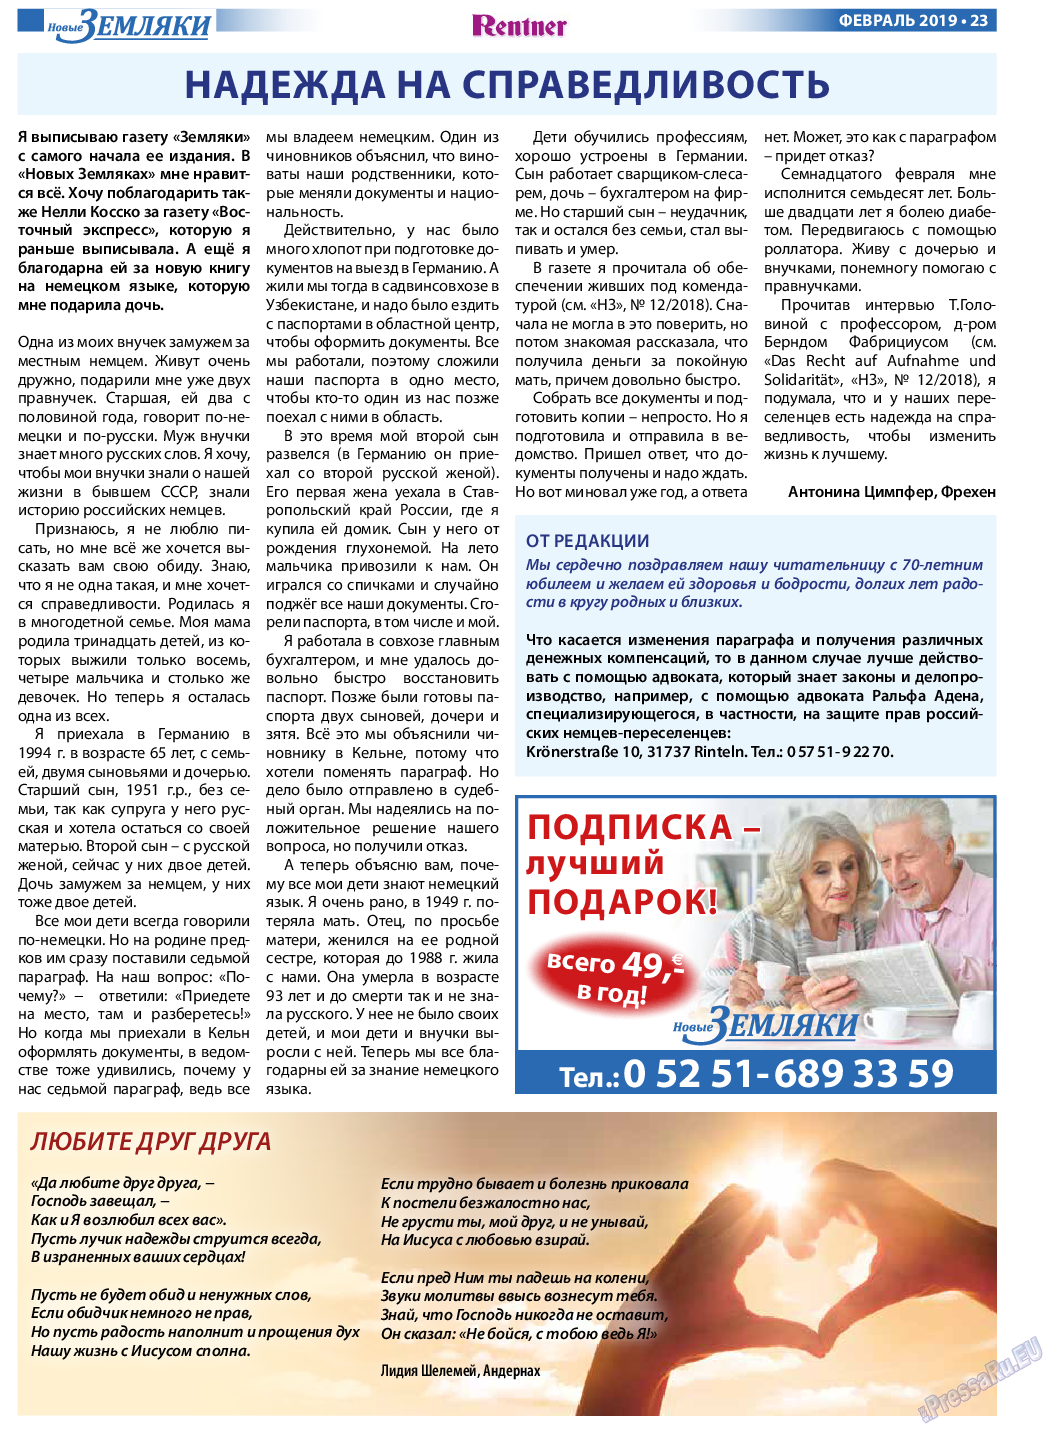 Новые Земляки, газета. 2019 №2 стр.23